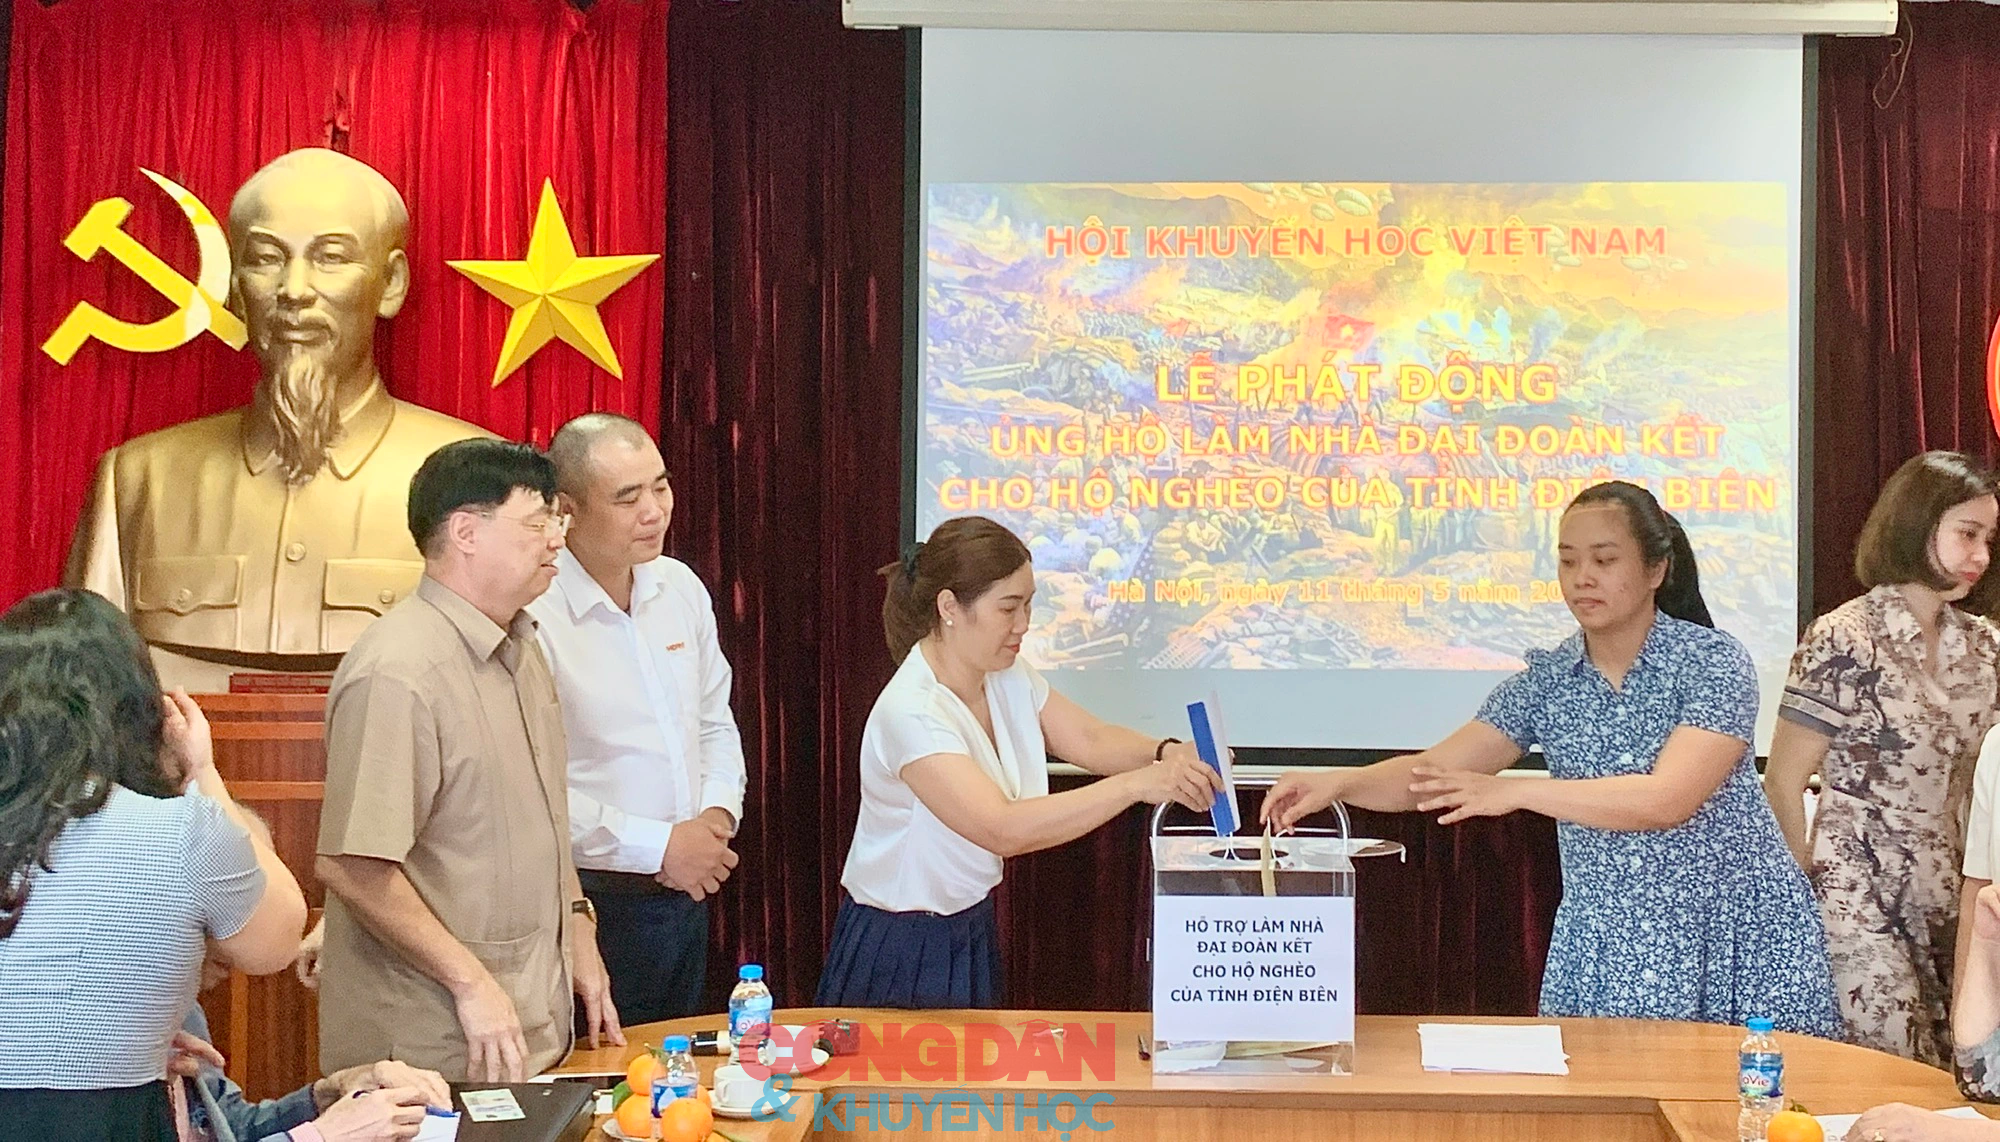 Trung ương Hội Khuyến học Việt Nam phát động ủng hộ làm nhà đại đoàn kết cho hộ nghèo của tỉnh Điện Biên. - Ảnh 5.